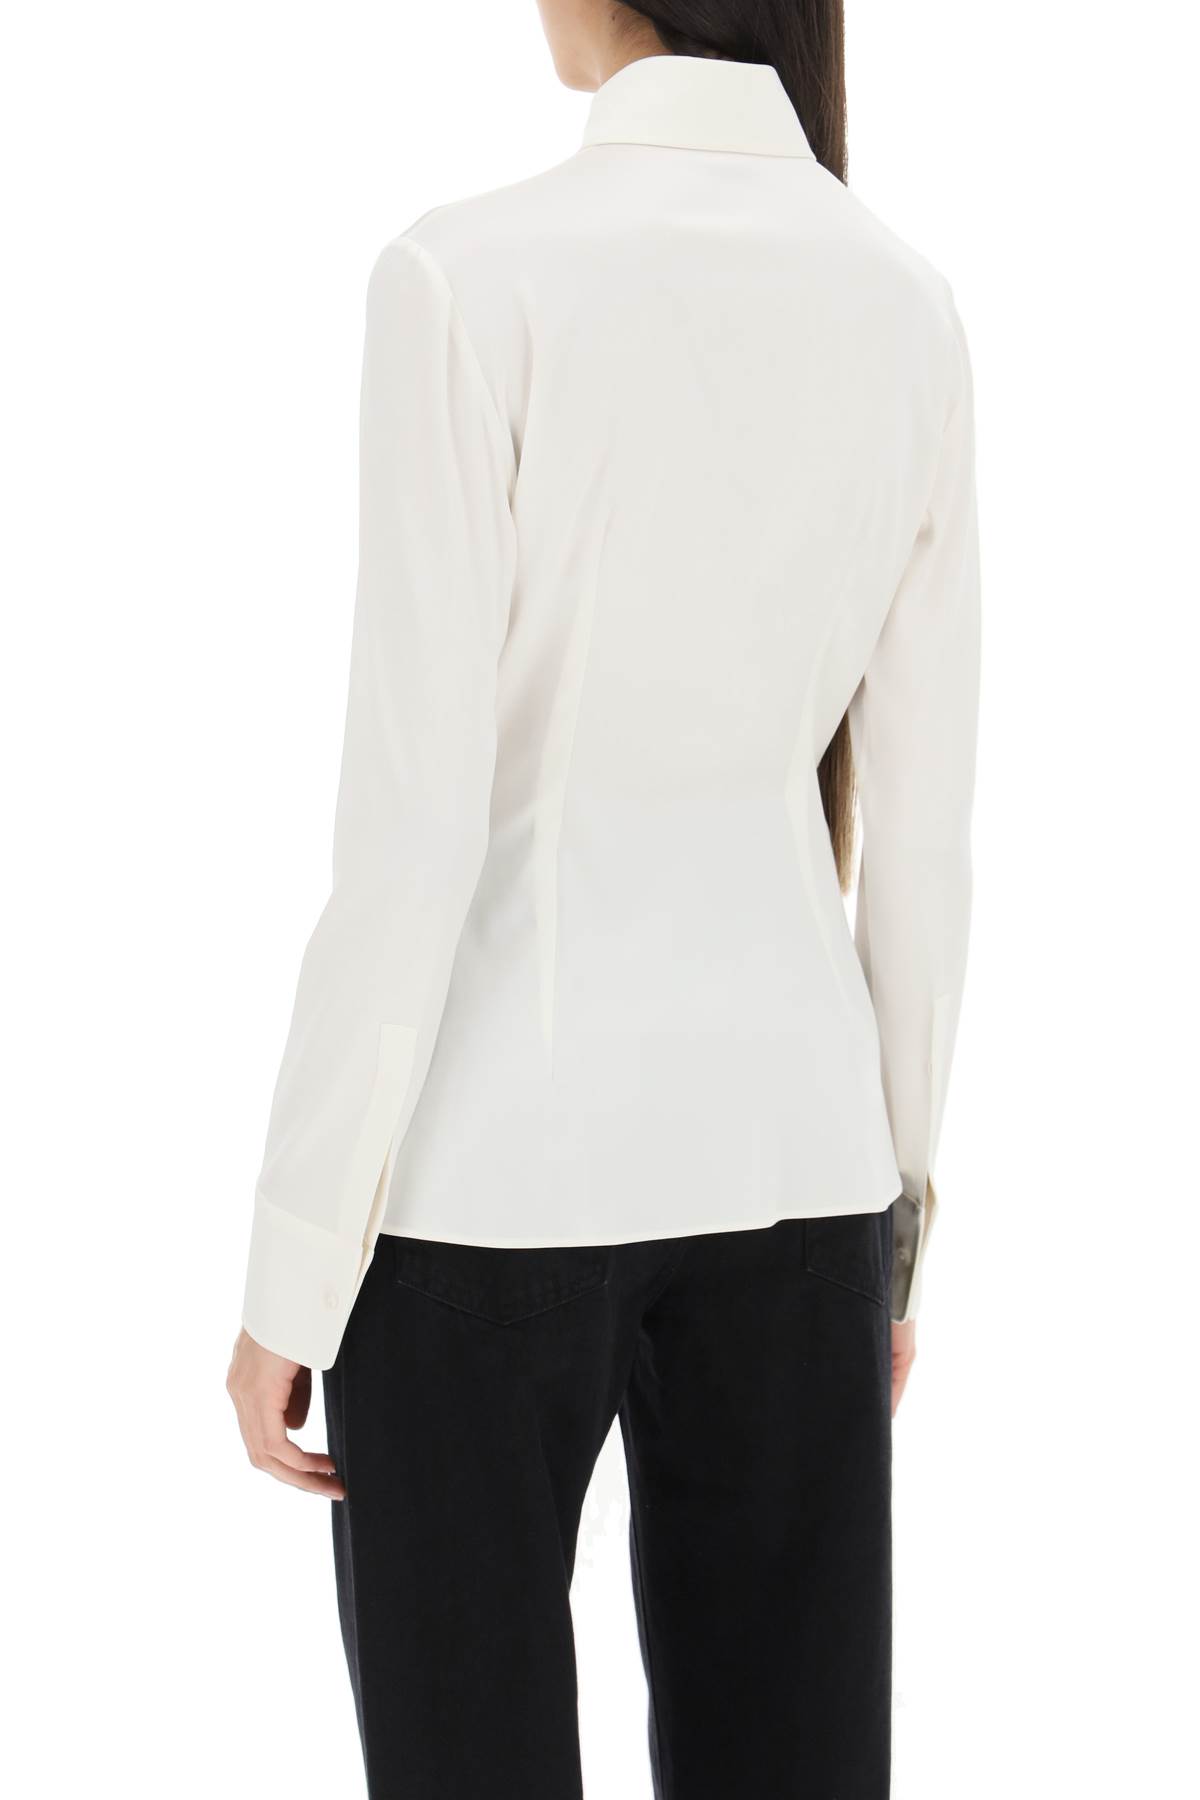 Shop Dolce & Gabbana Shirt In Silk Satin In Bianco